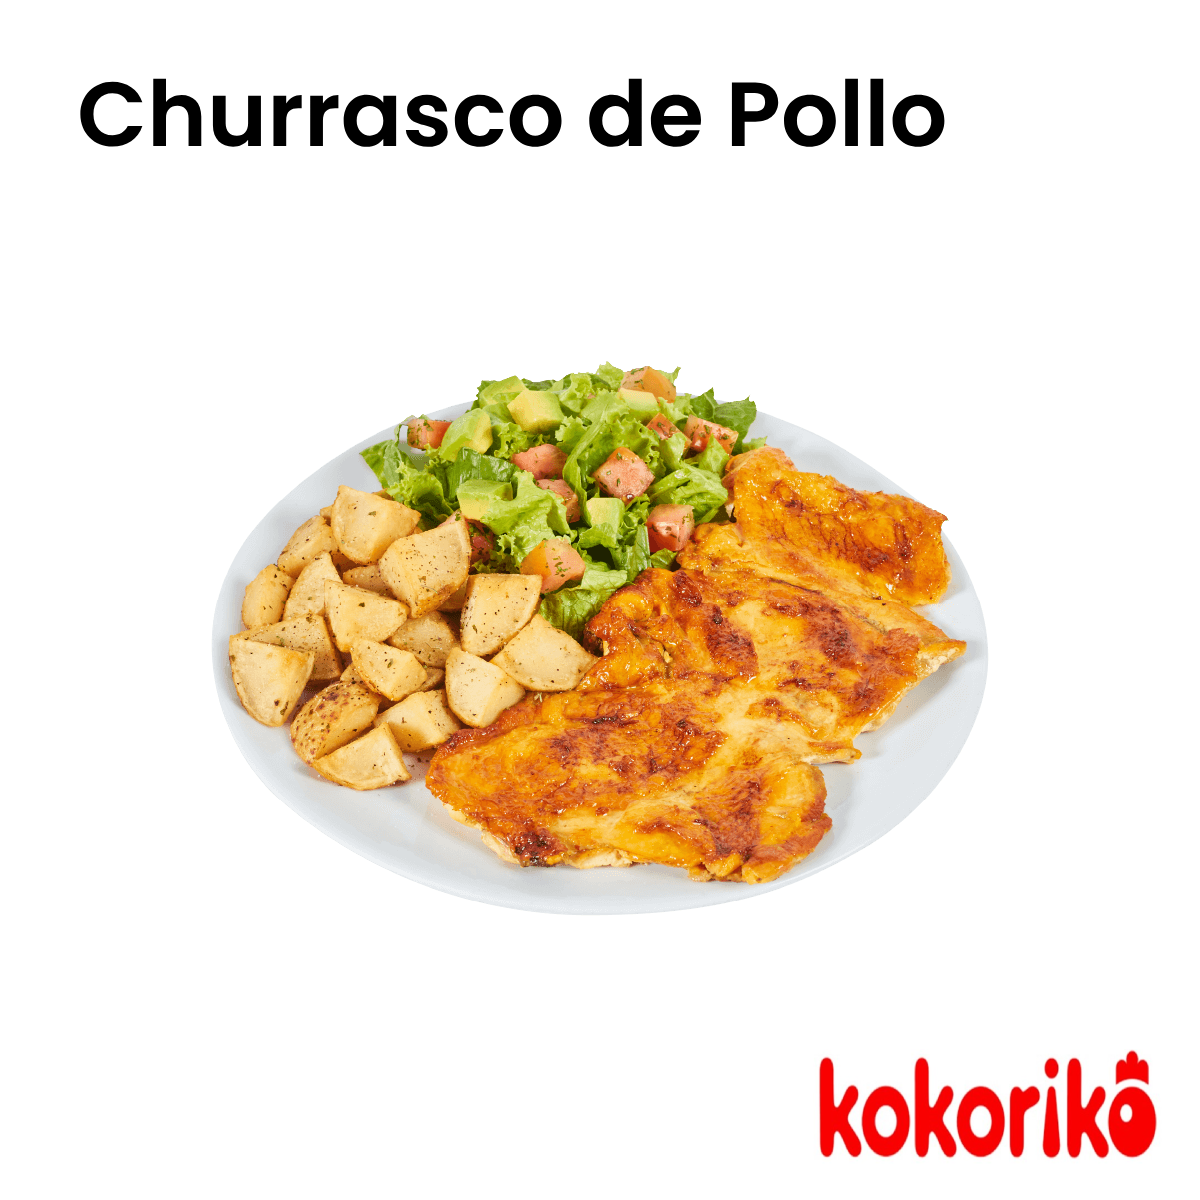 Bono Churrasco de Pollo - Kokoriko